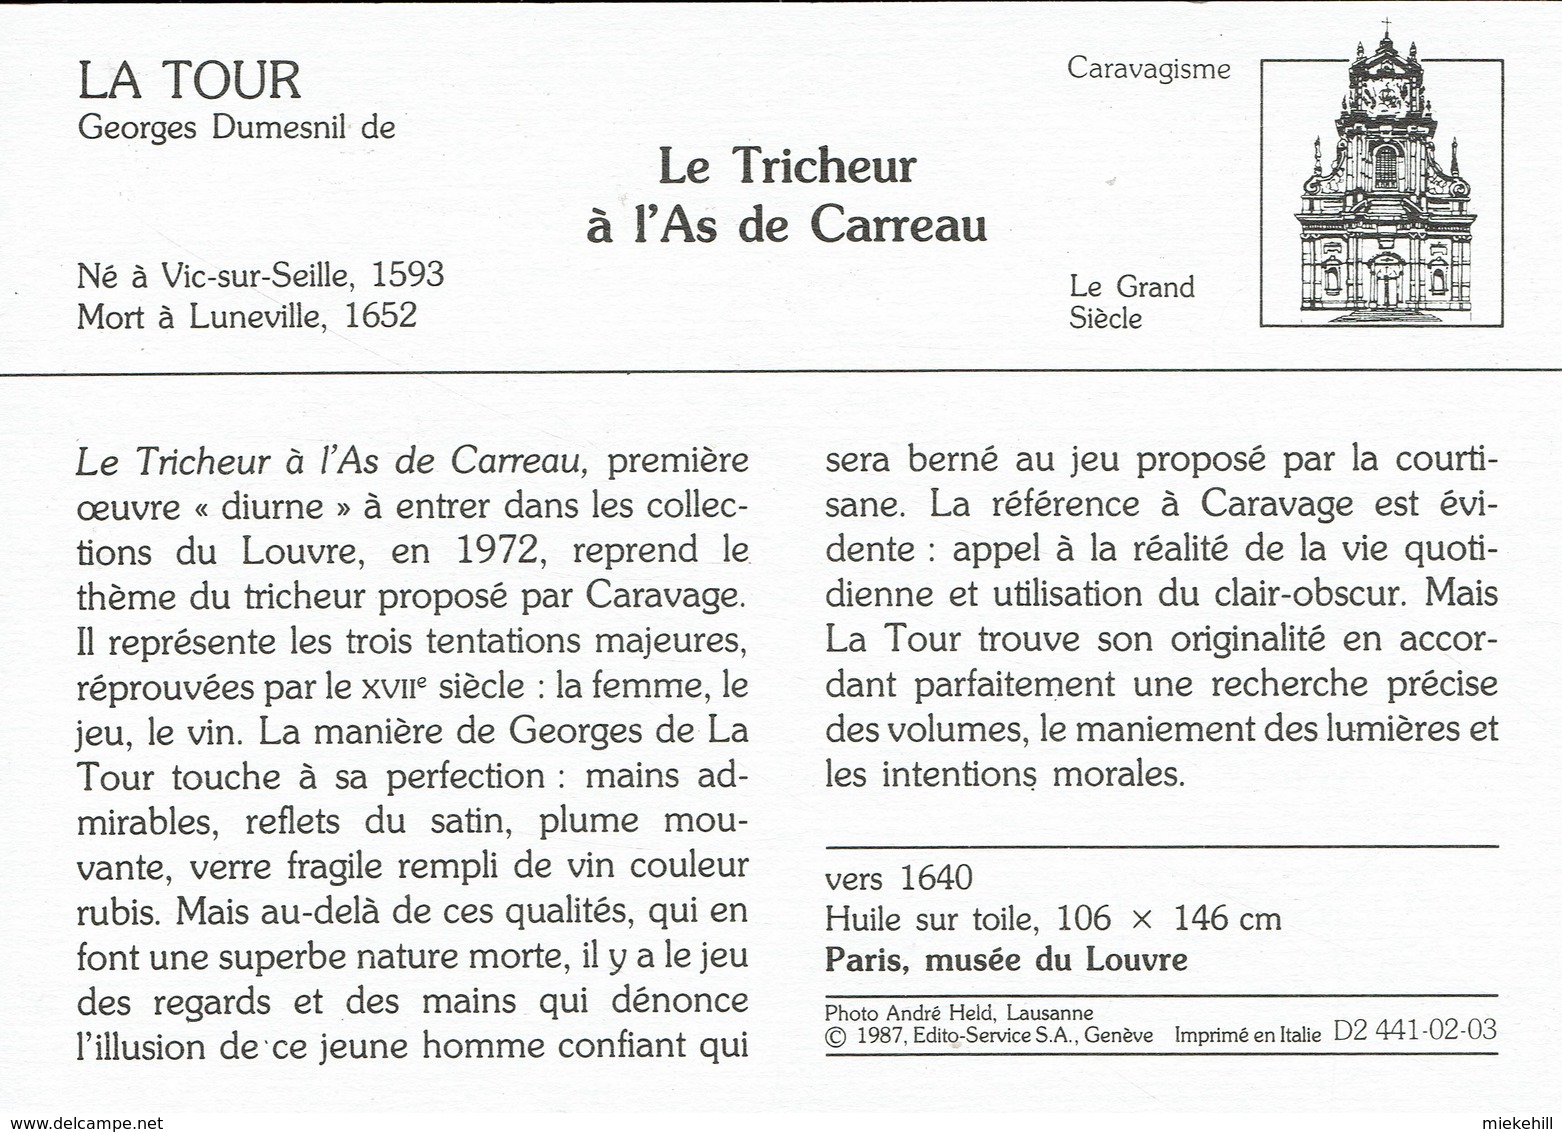 JEUX DE CARTE-TRICHEUR  A L'AS-VALSSPELER MET RUITENAAS-TABLEAU DE GEORGES LA TOUR-PARIS MUSEE DU LOUVRE - Carte Da Gioco